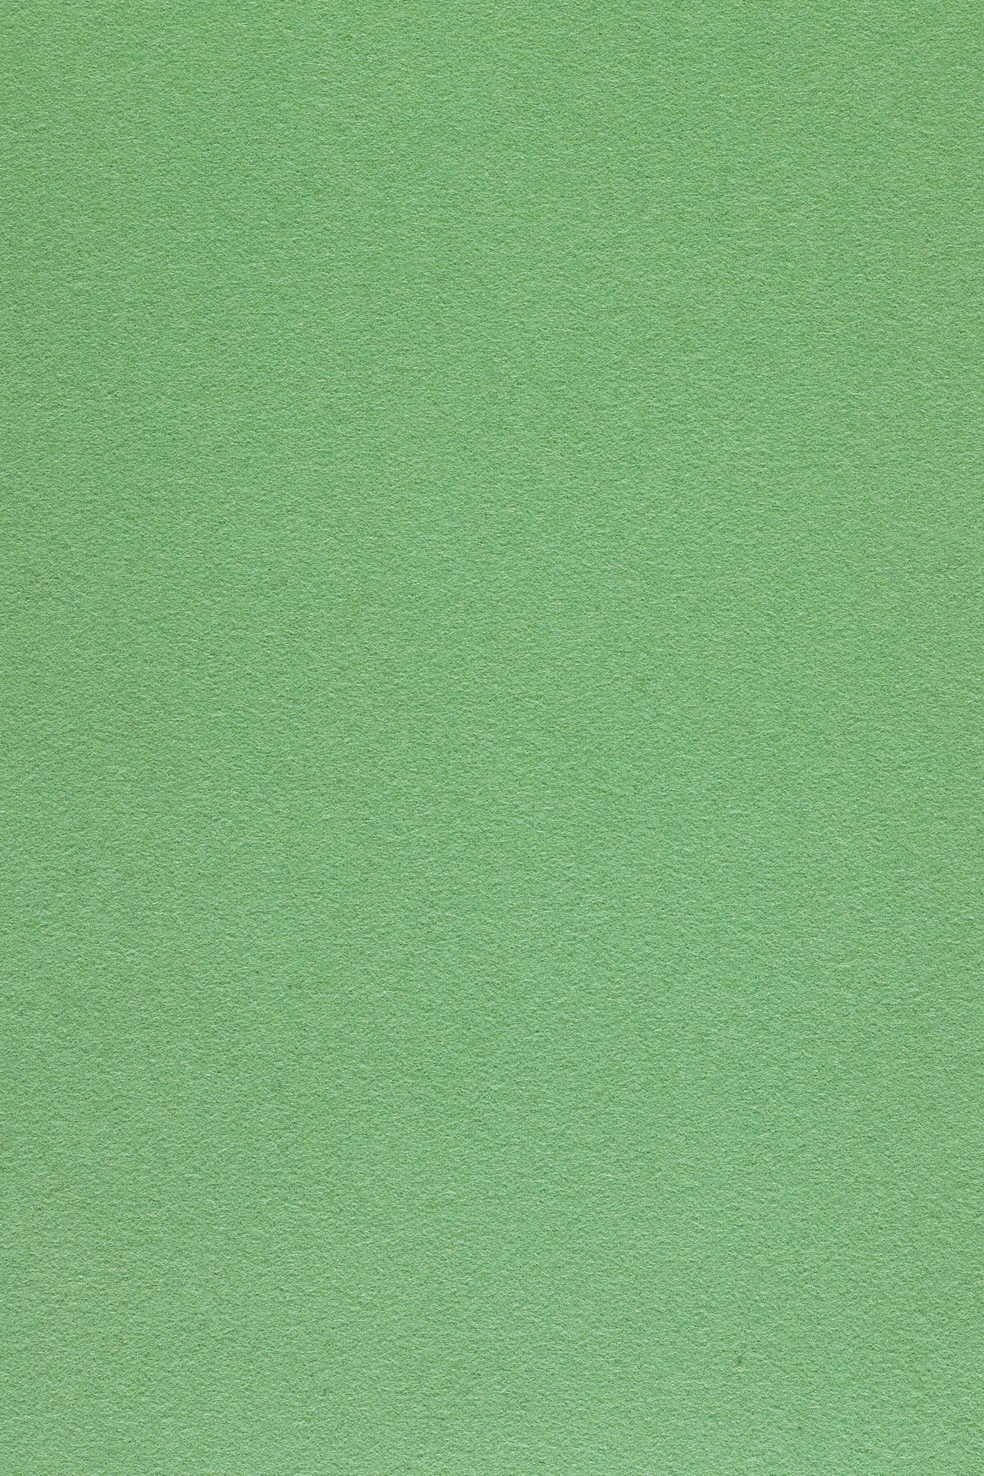 Fabric sample Divina 3 966 green